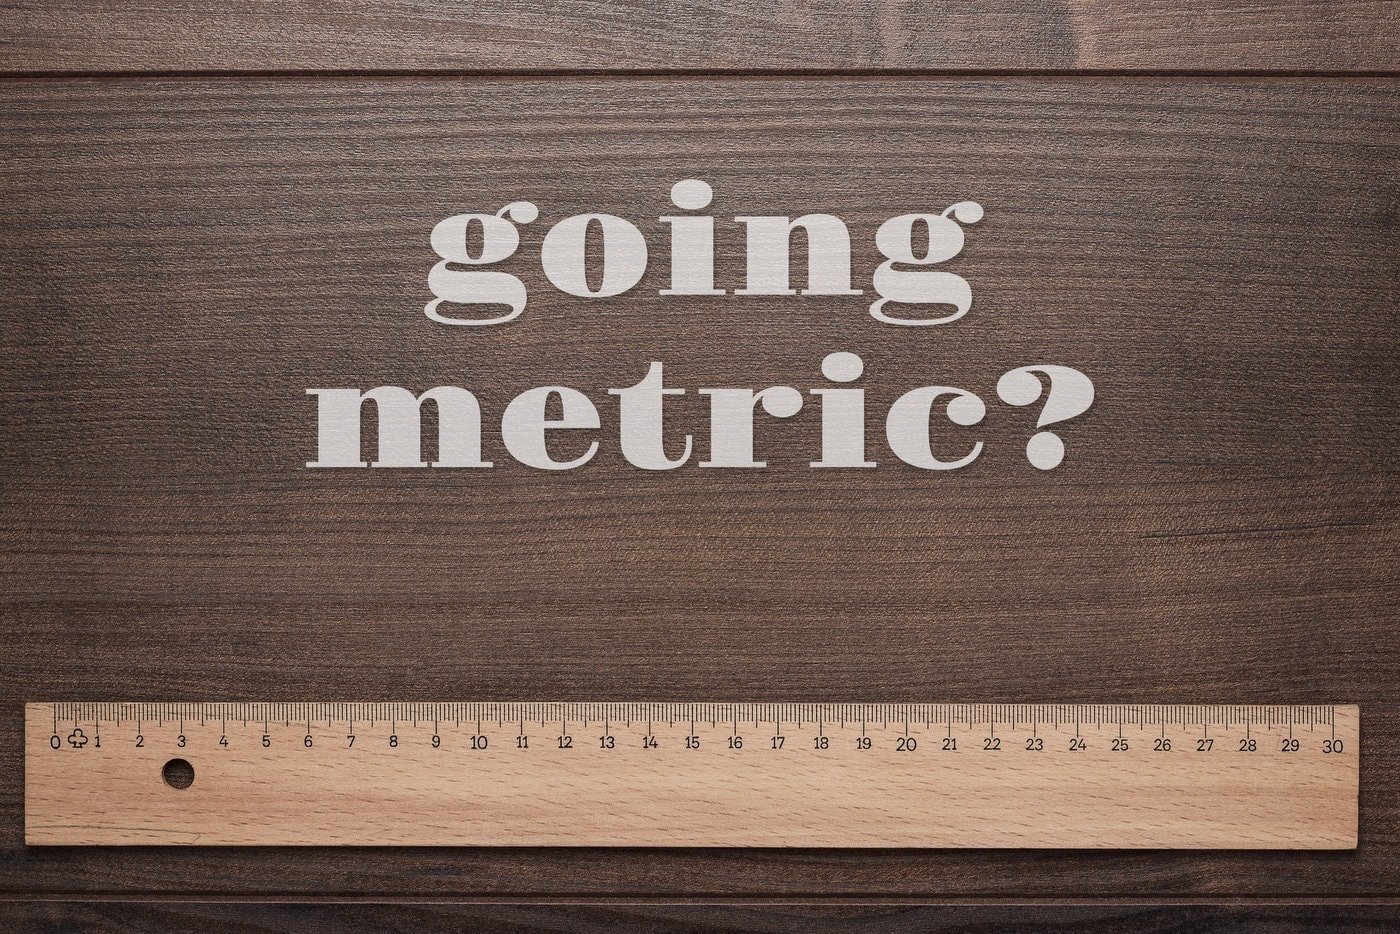 Perché gli USA non usano il sistema metrico?